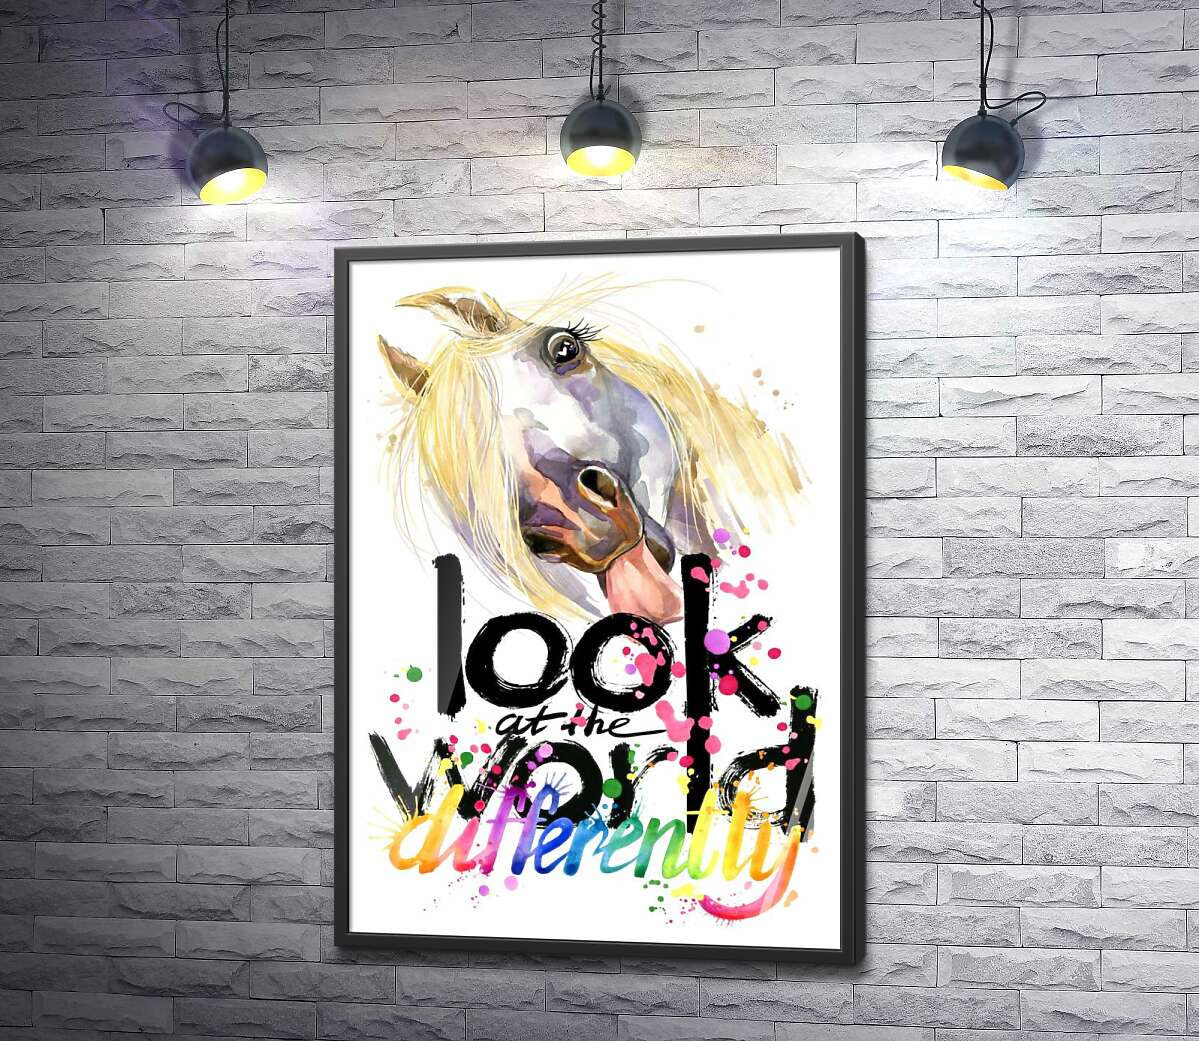 постер Надпись "look at the world differently" и белая лошадь, показывающая язык